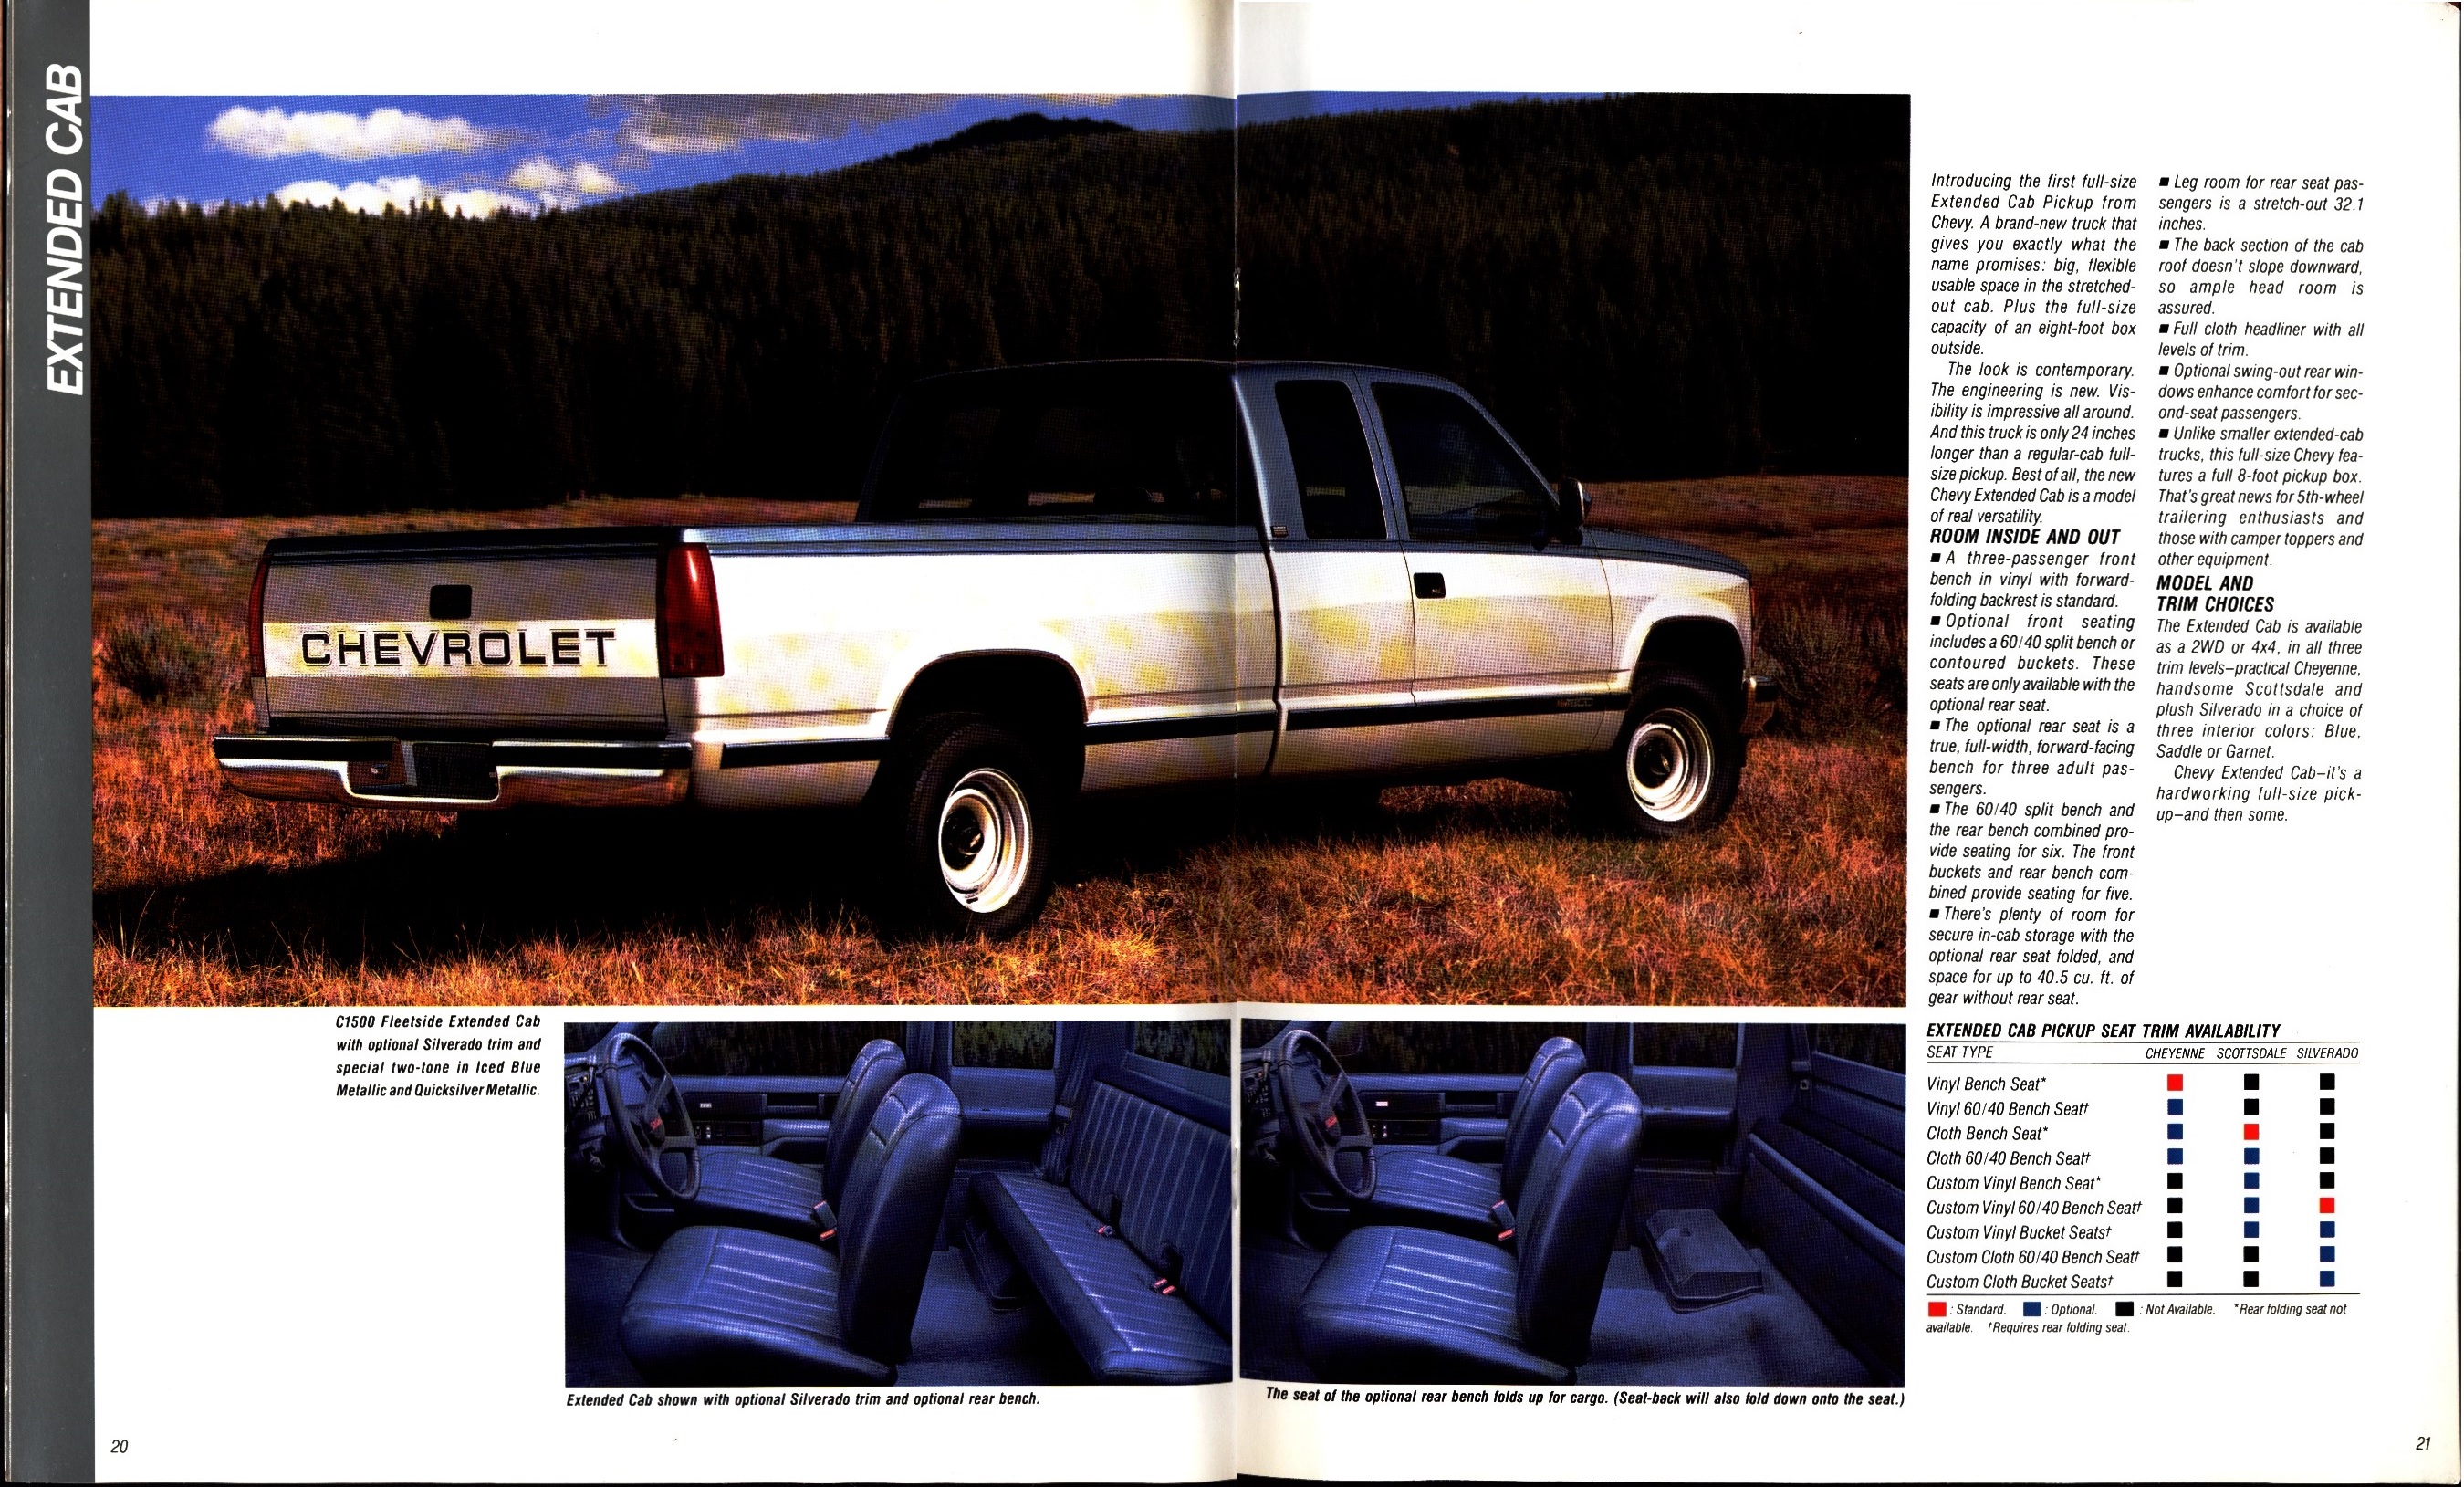 1988 Chevrolet Full Size Pickup Brochure (Rev) 20-21